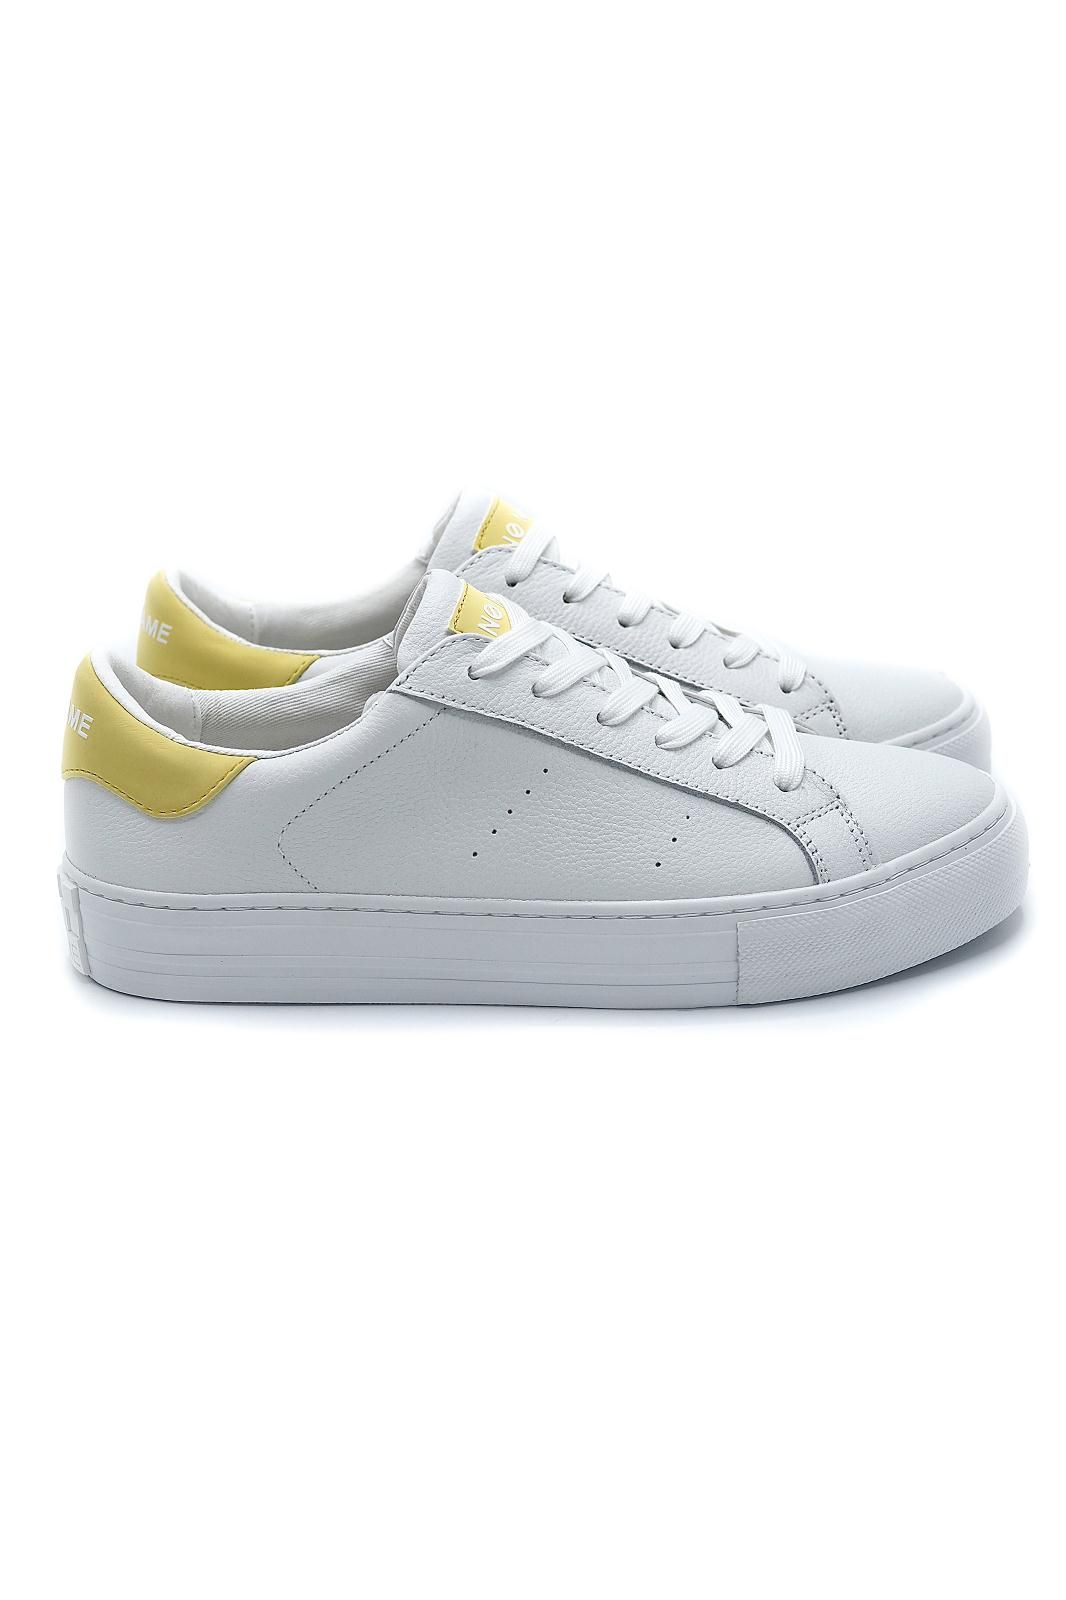 https://marine.shoes/_images/products/noname-sem-bloc-classique-basket-bas-femmes-cuir-blanc-arcade-basket-blanc-jaune-49640-0.jpg